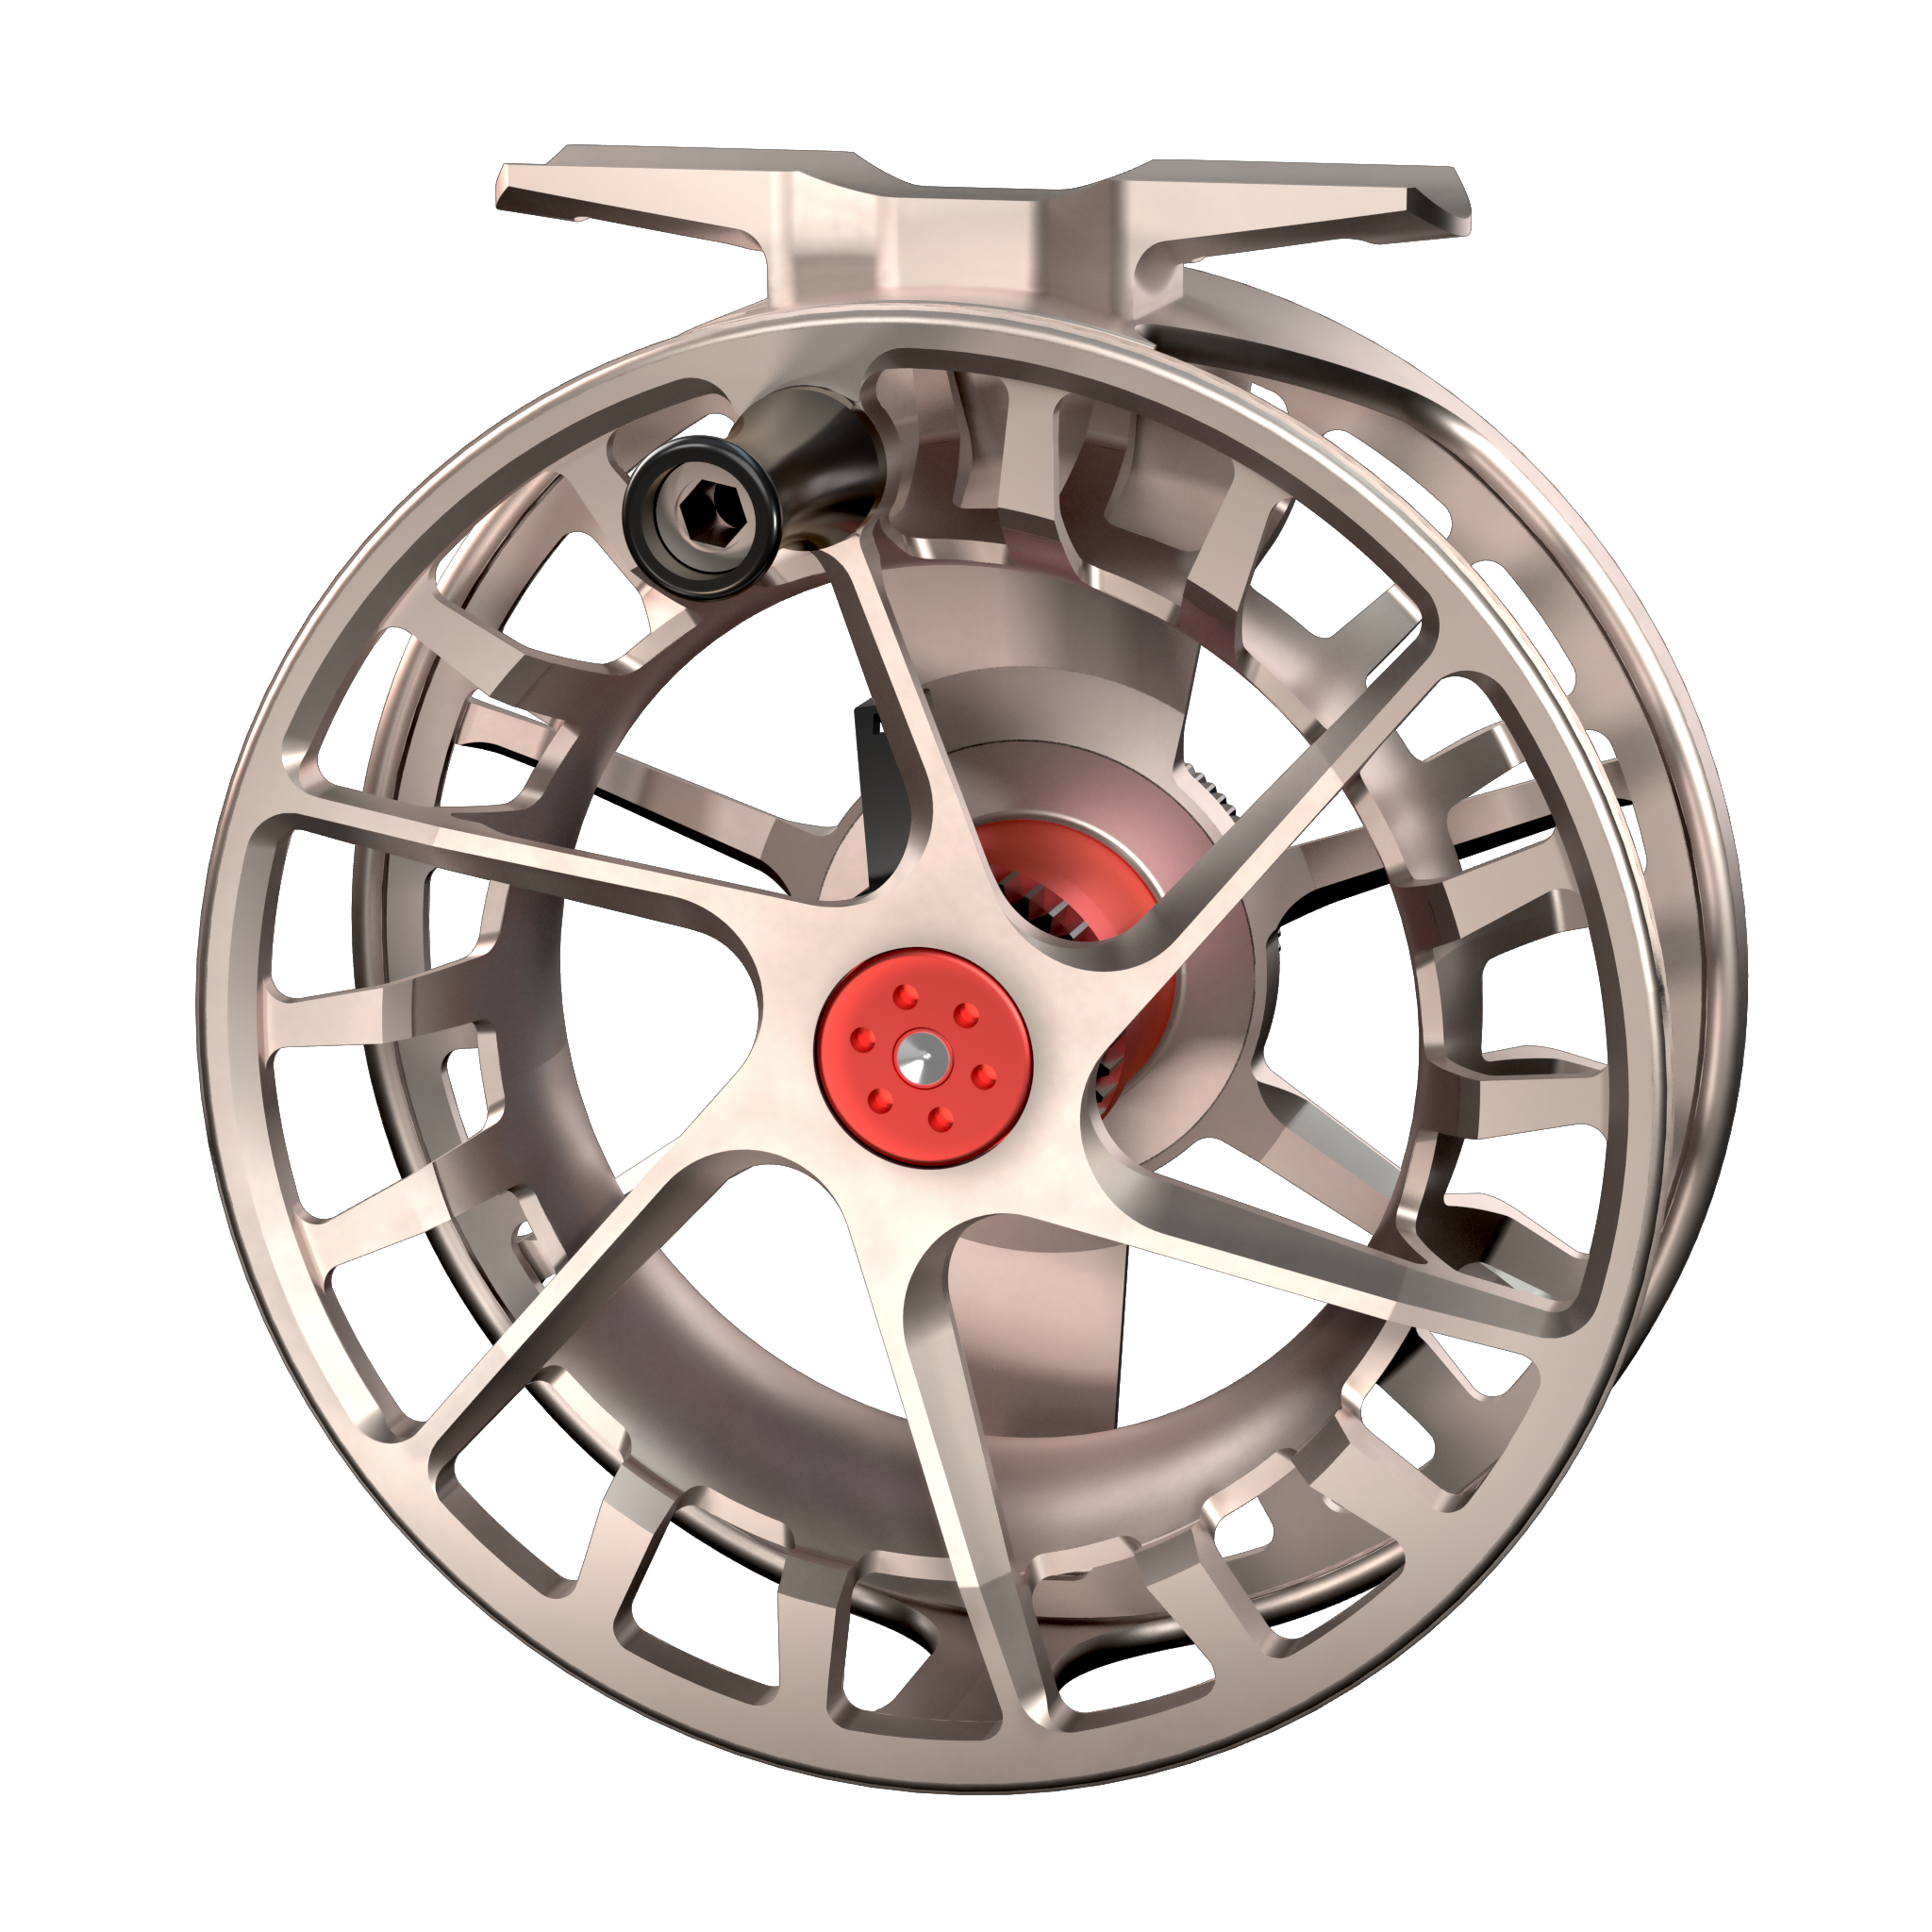 Waterworks-Lamson Speedster S-Series Spools – TechLibro